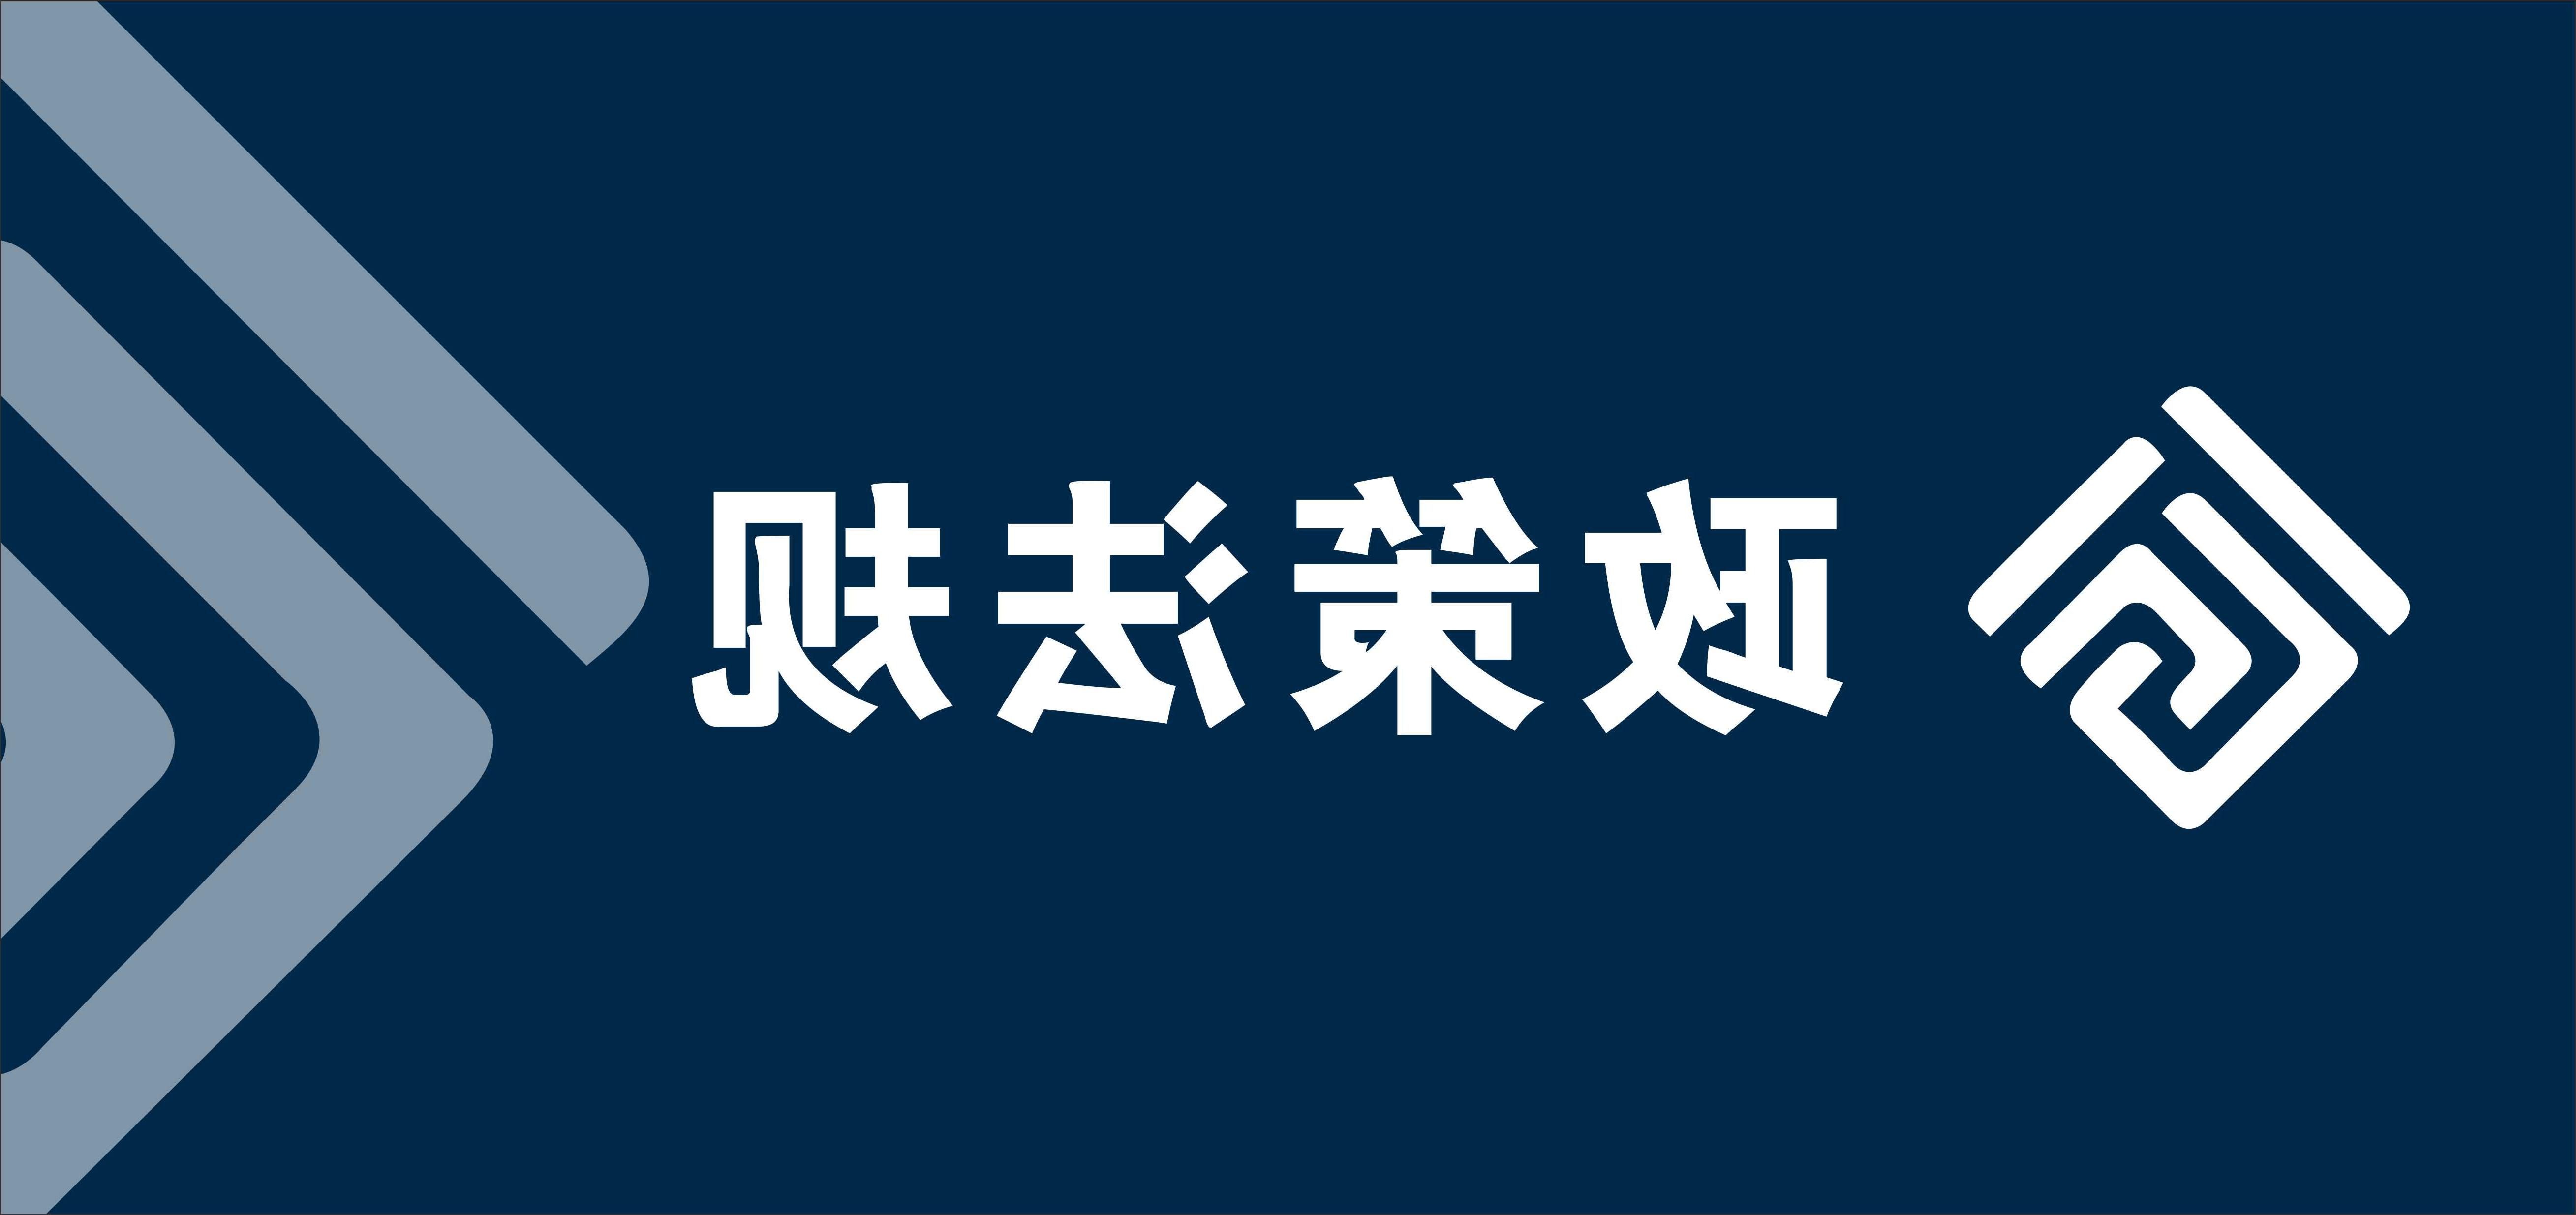 中国水务行业监管机构、相关产业政策及法规